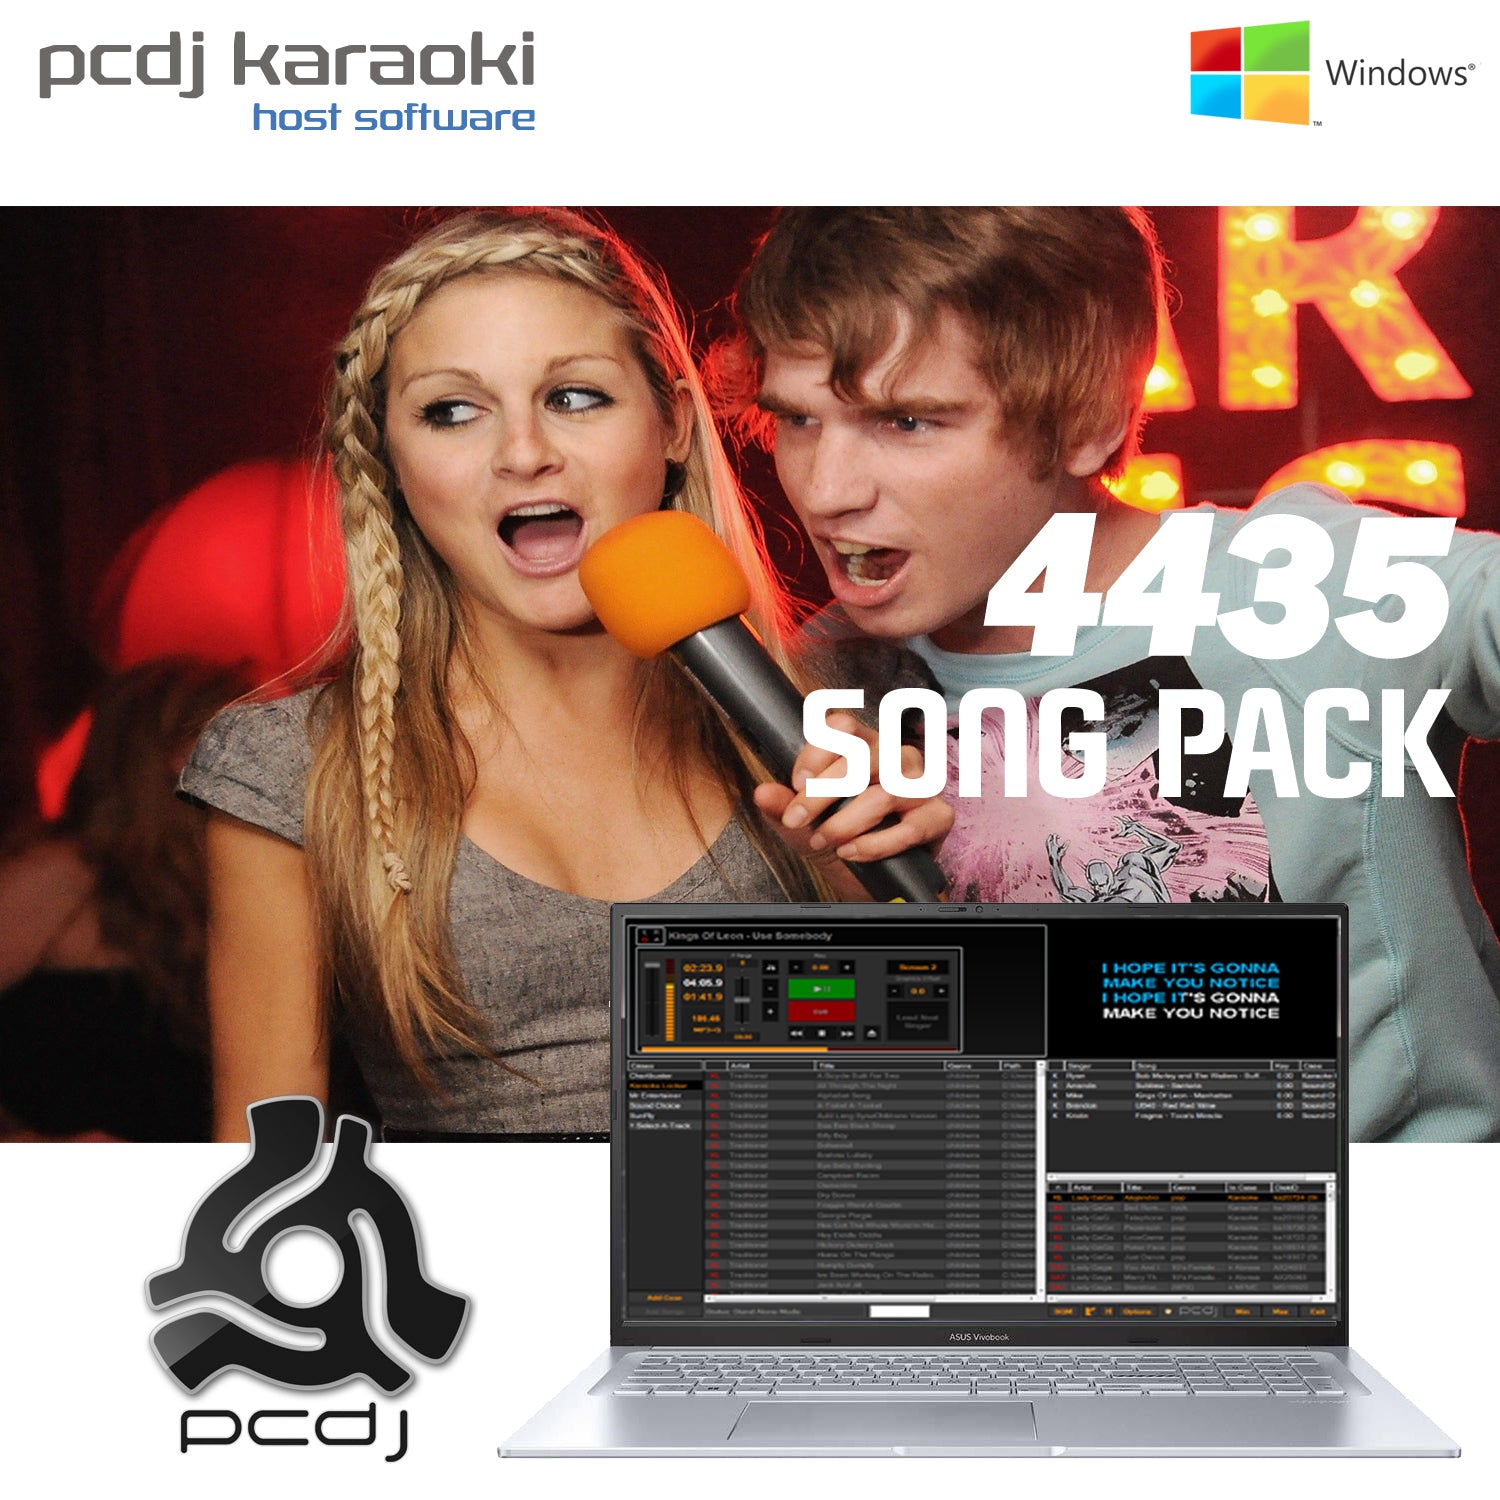 PCDJ Karaoki Hosting Software + 4435 Song Pack